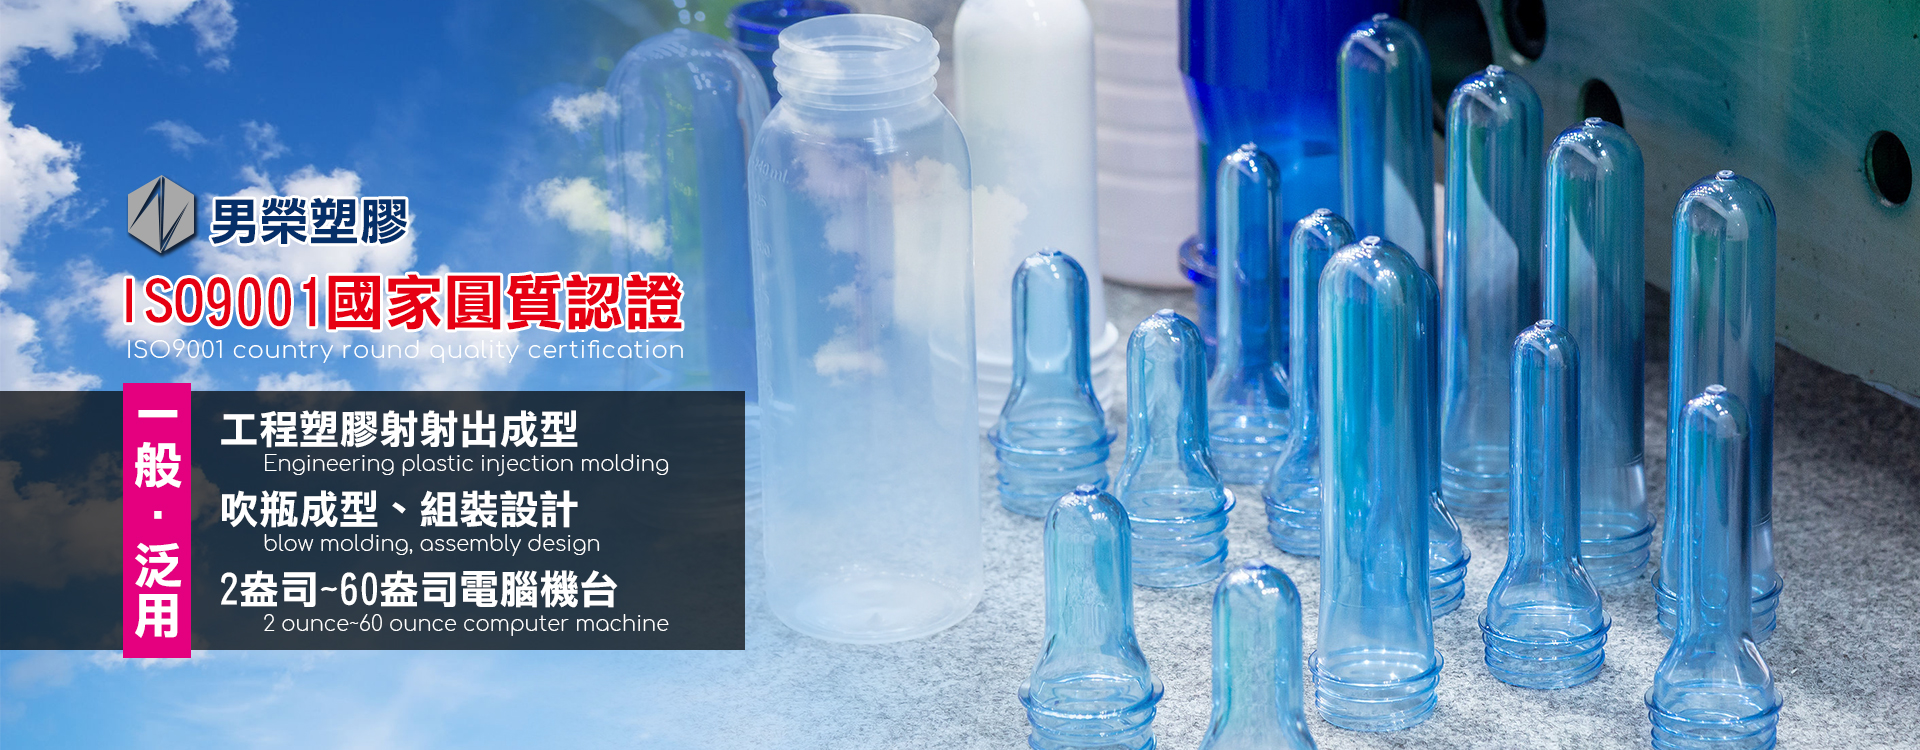 男榮塑膠企業股份有限公司以客戶需求為導向的專業塑膠射出成型廠。